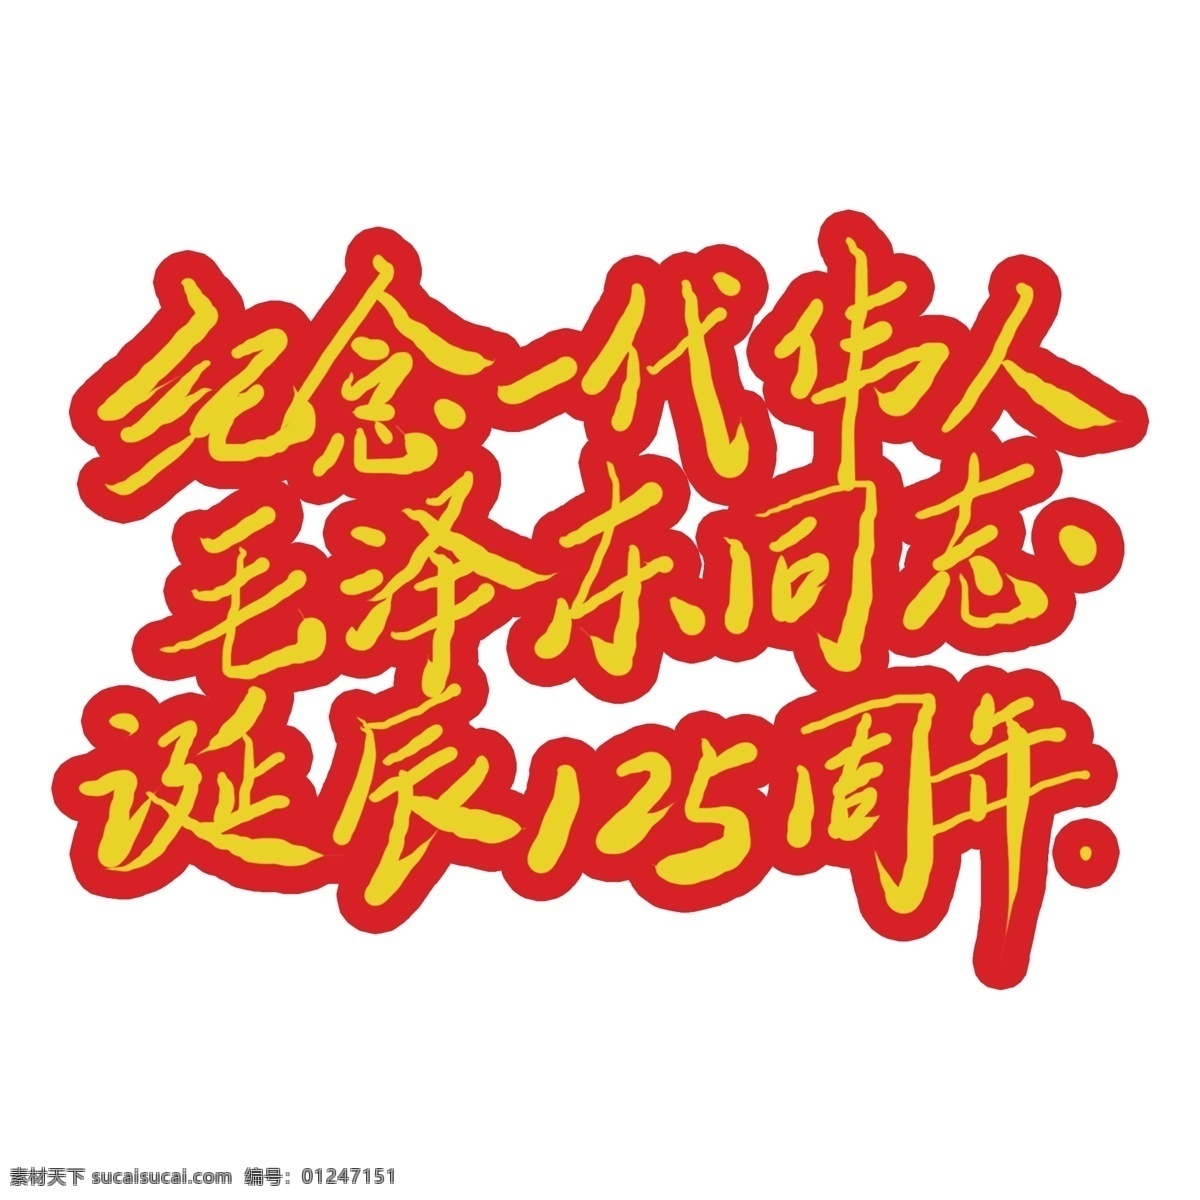 纪念 一代 伟人 毛泽东 艺术 字 元素 艺术字 立体 字体